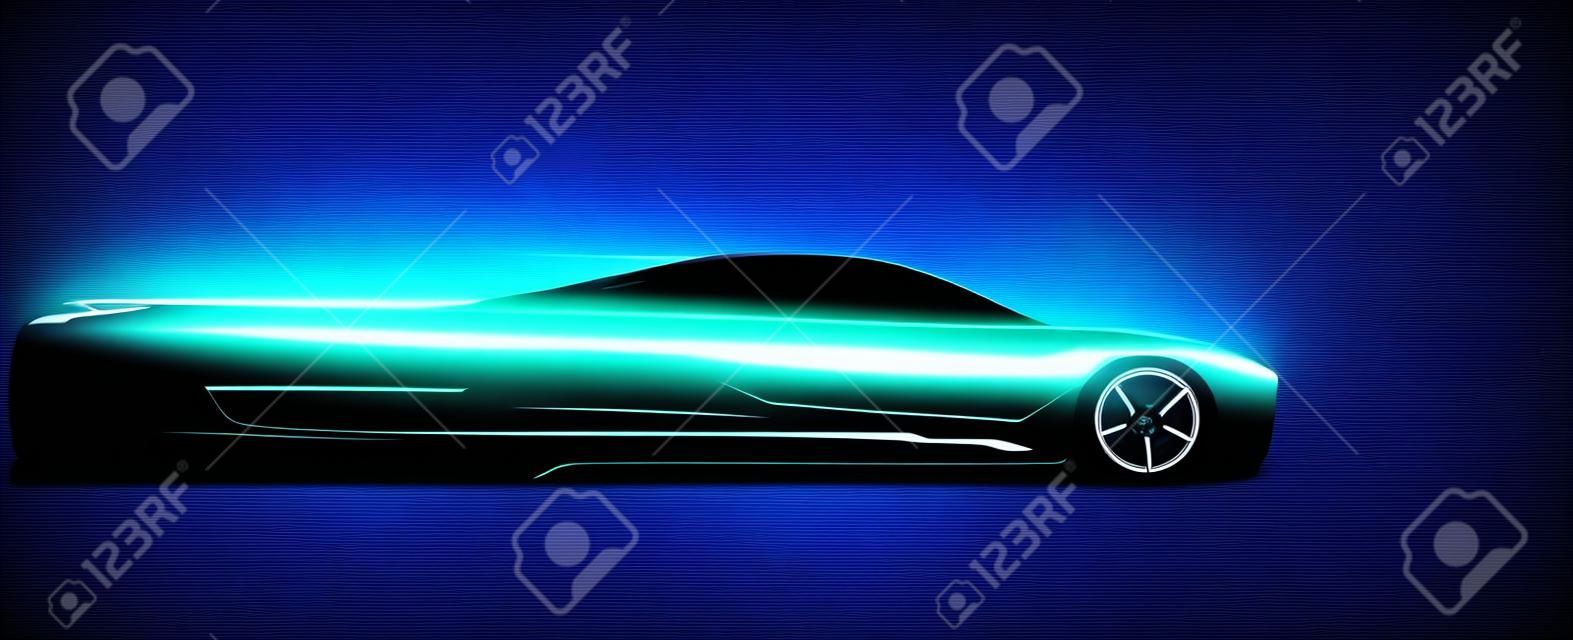 Widok z boku neon świecące sylwetka samochodu sportowego. Streszczenie nowoczesny styl ilustracji wektorowych eps 10.